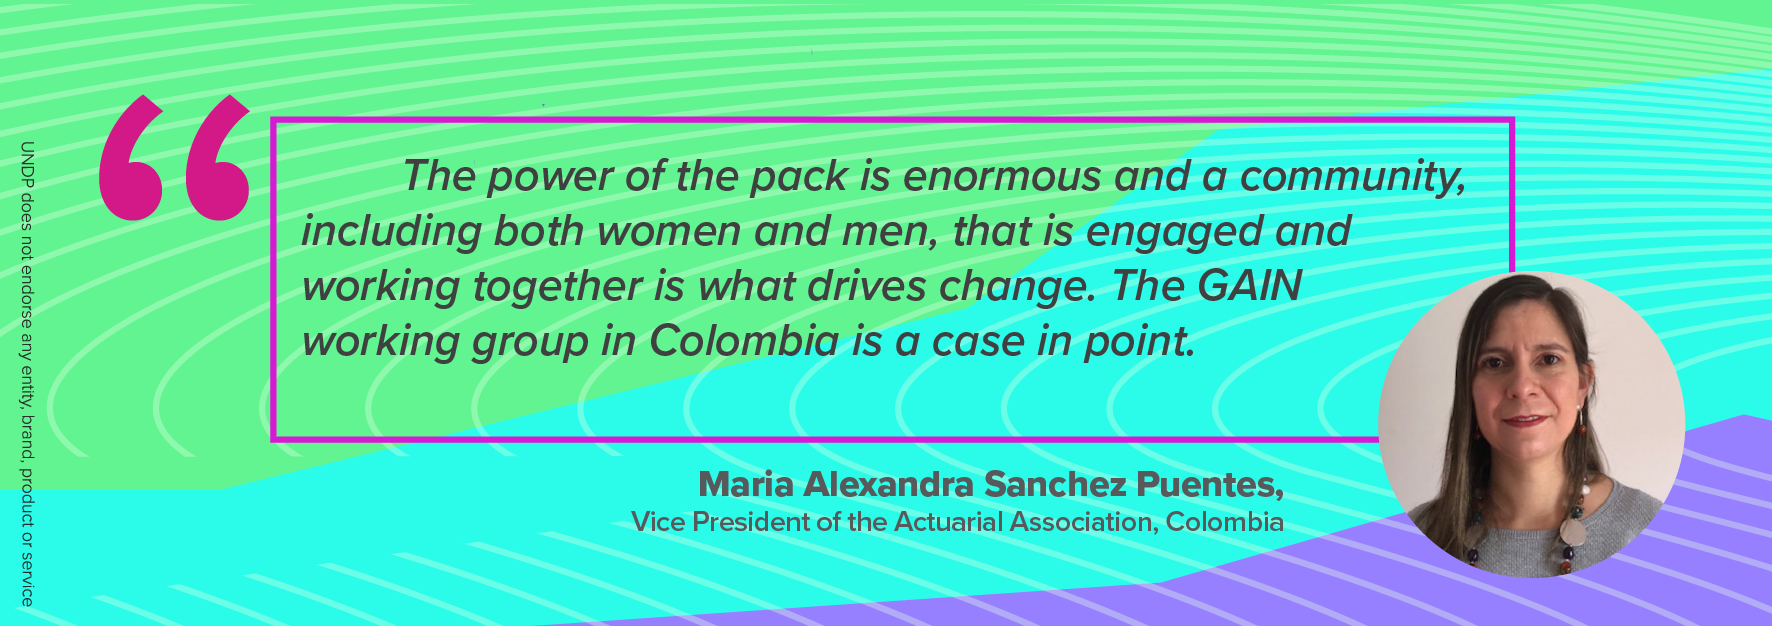 Maria Alexandra Sanchez Puentes Quote